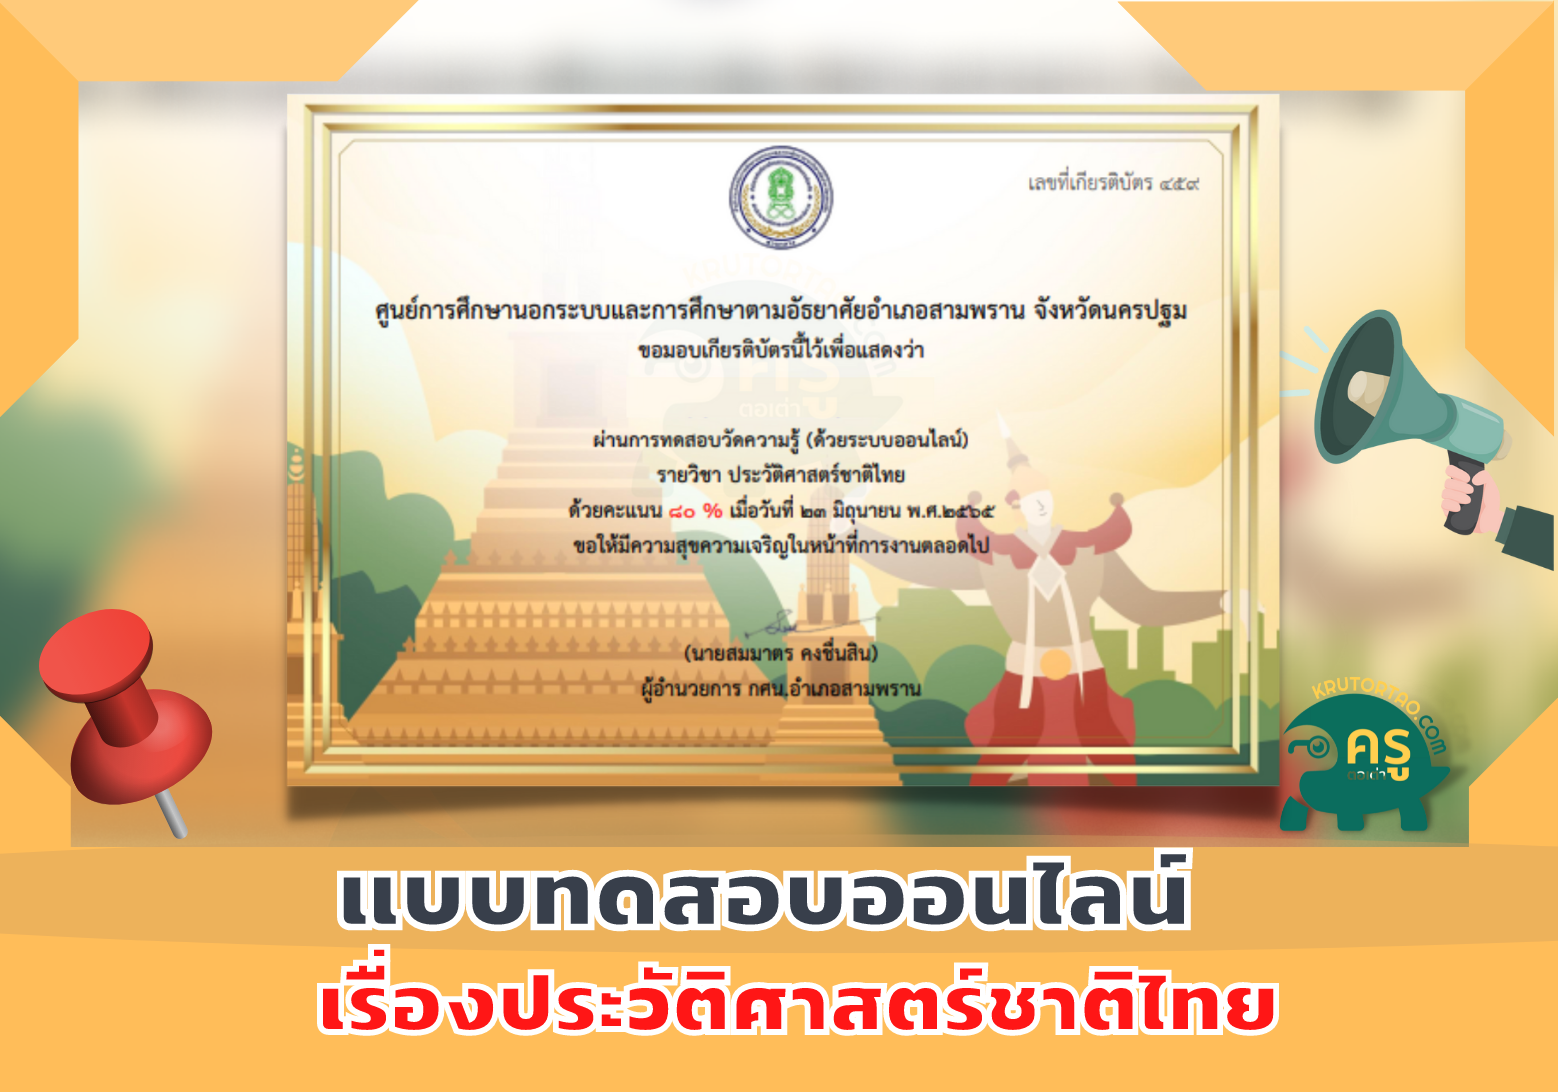 ขอเชิญชวนร่วมทำแบบทดสอบออนไลน์เรื่องประวัติศาสตร์ชาติไทยเพื่อรับเกียรติบัตร จาก กศน.บางเตย